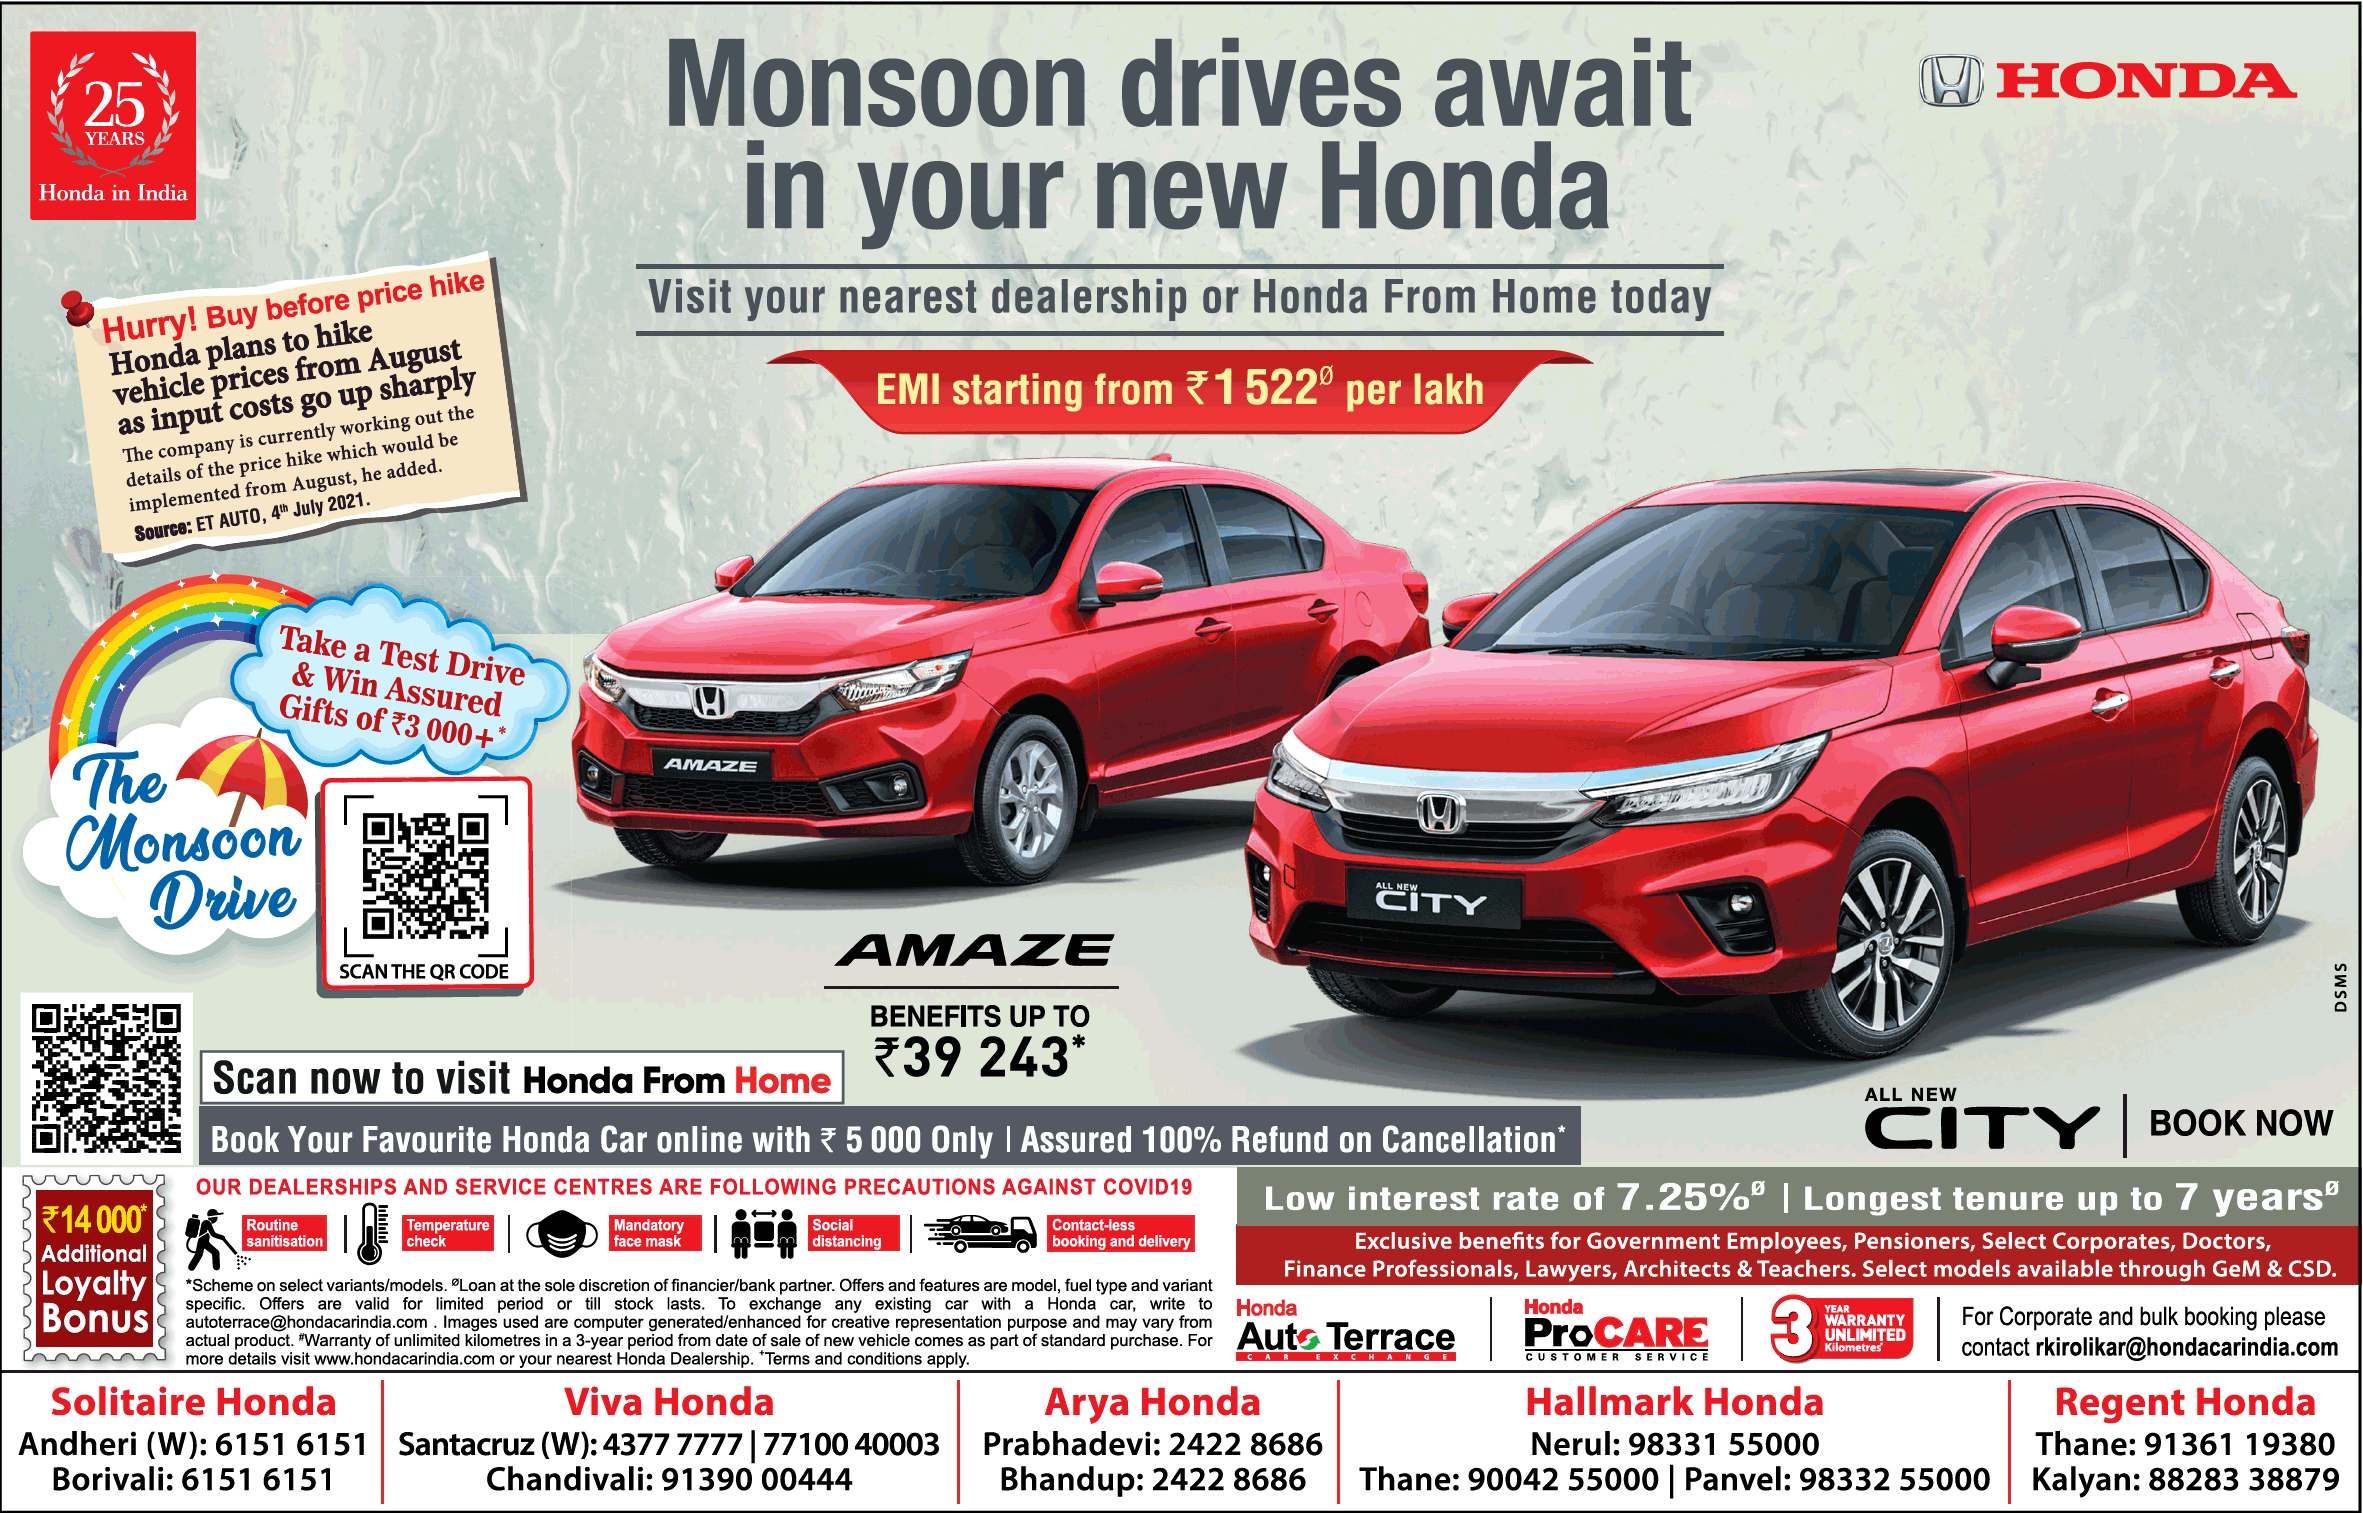 honda-monsoon-drives-await-in-your-new-honda-amaze-city-ad-times-of-india-mumbai-9-7-2021